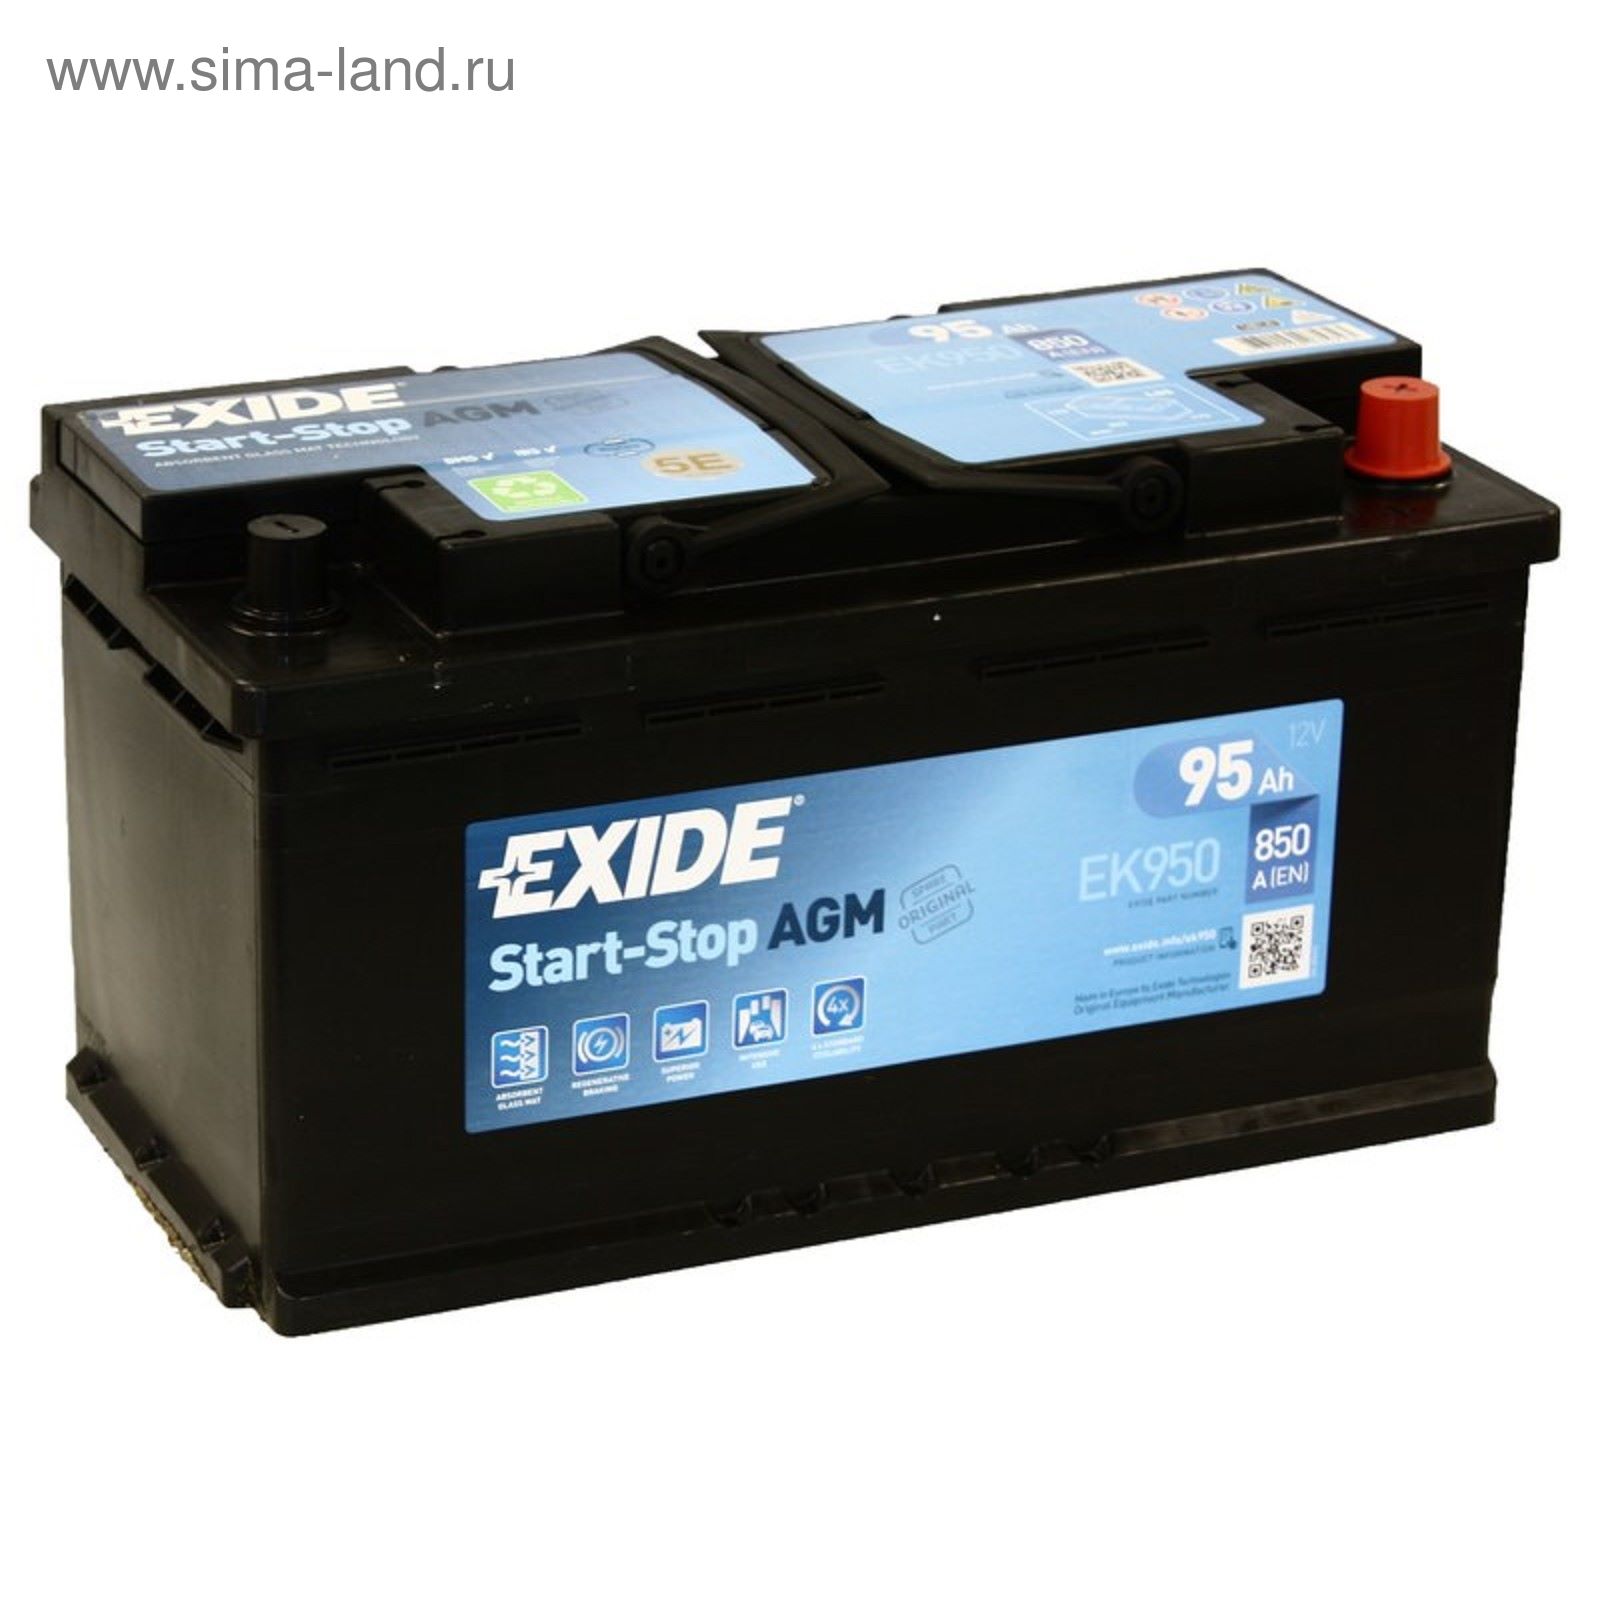 Аккумулятор start agm. Аккумулятор Exide start-stop AGM ek800. Ek950 Exide. Аккумулятор Exide AGM 95. Аккумуляторы Exide ek950.